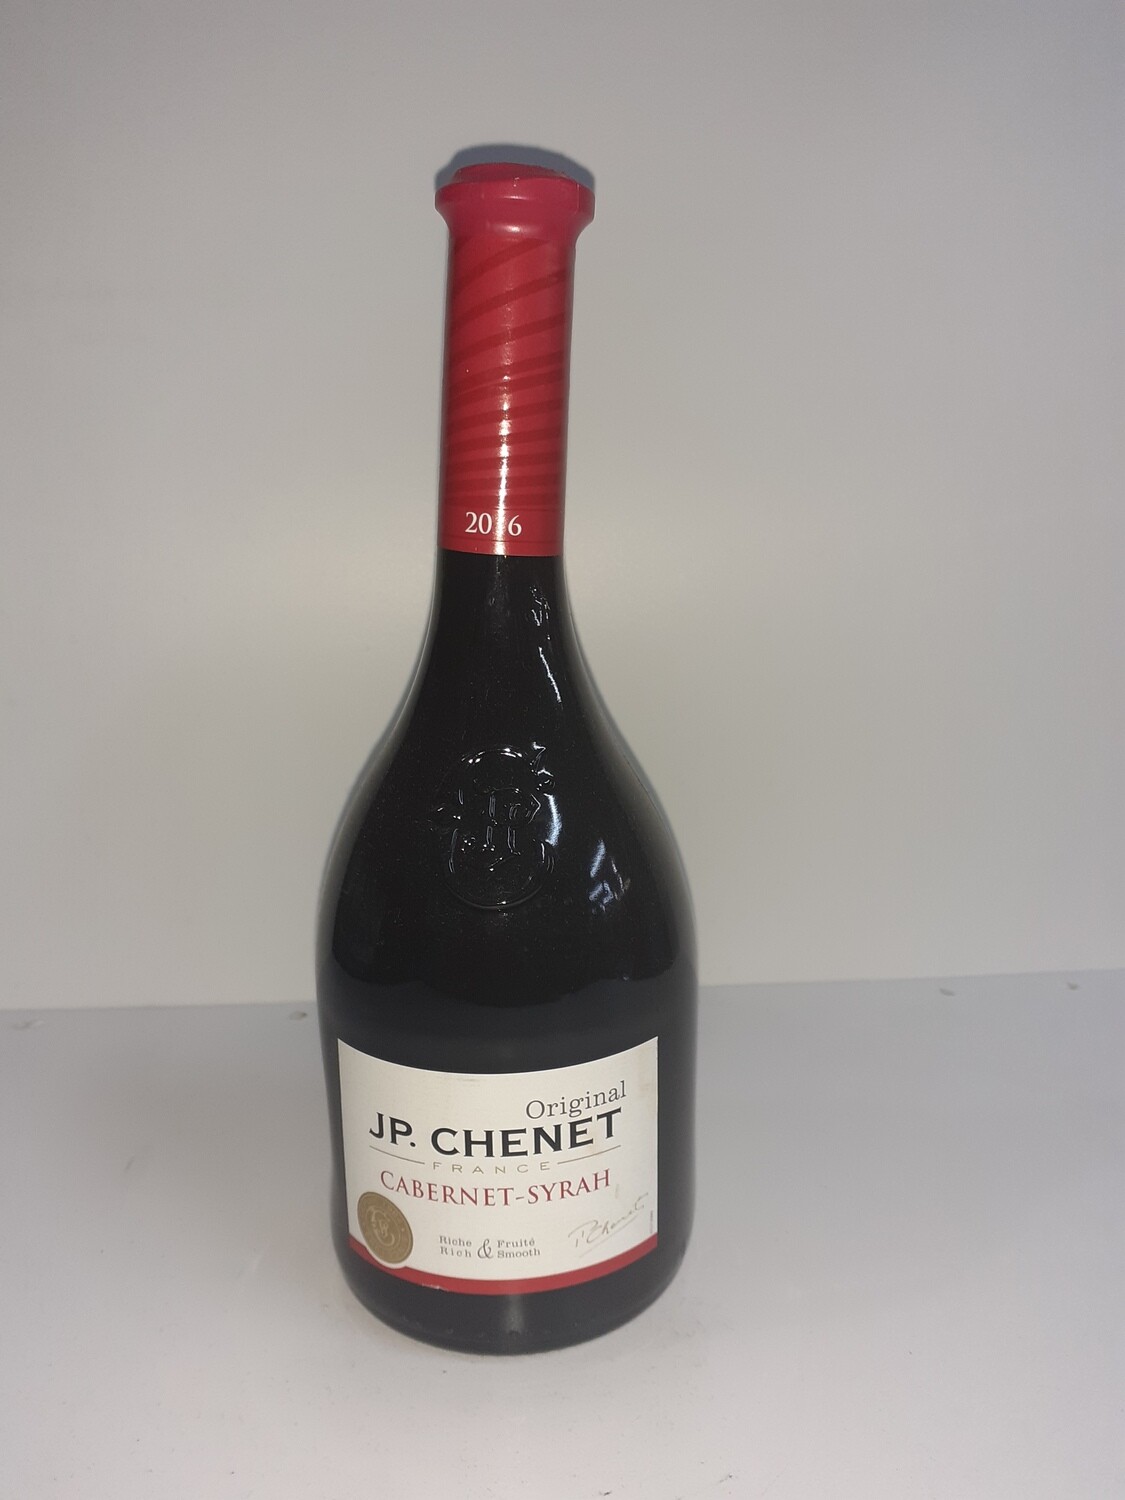 JP. CHENET cabernet-syrah